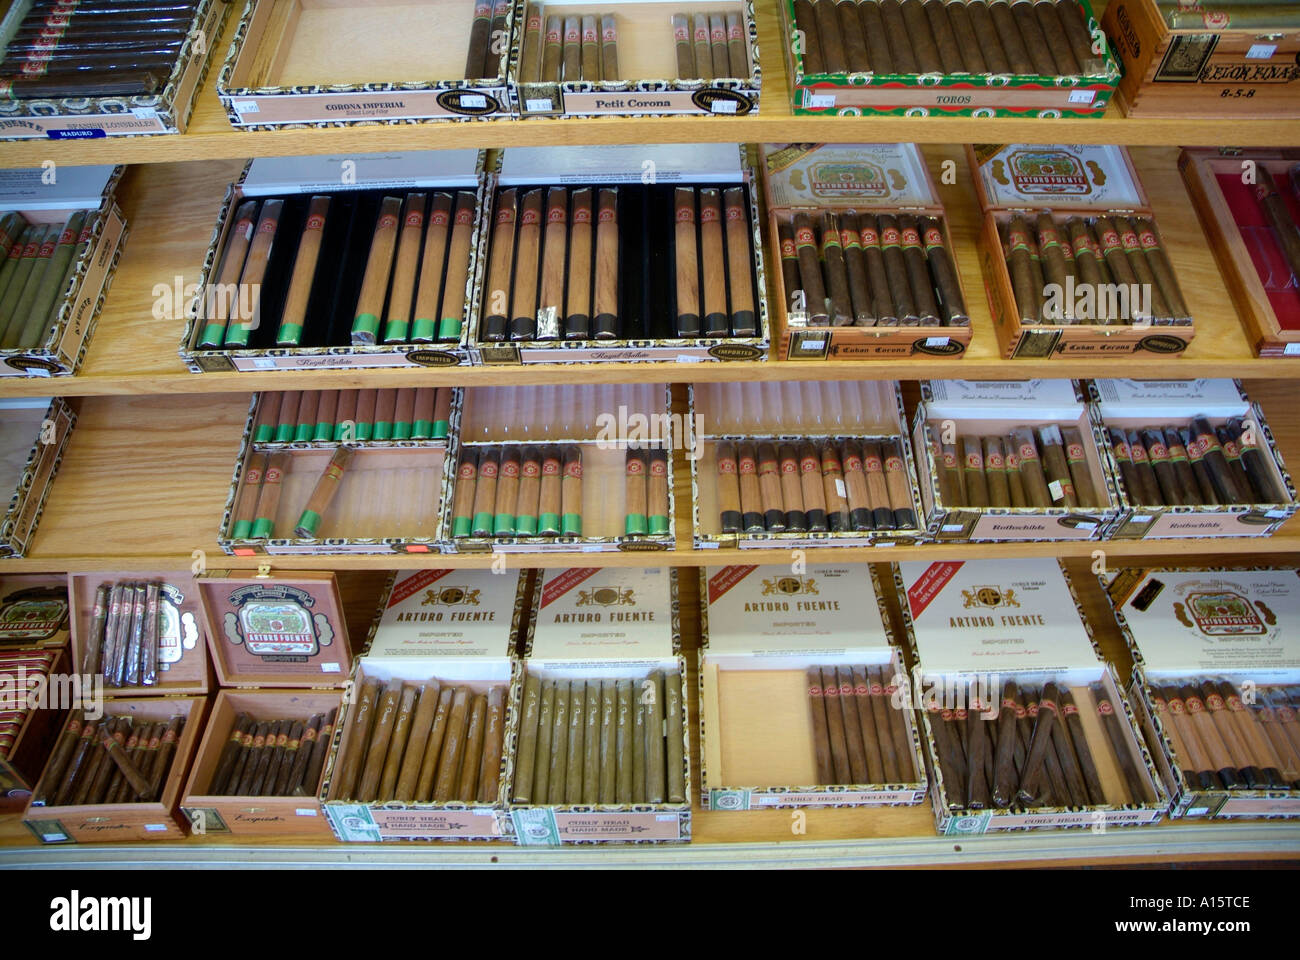 Beliebte Florida Touristenziel in Ybor City Tampa FL Stadt bekannt für Hand gemacht Zigarren aus Tabak importiert weltweit Stockfoto